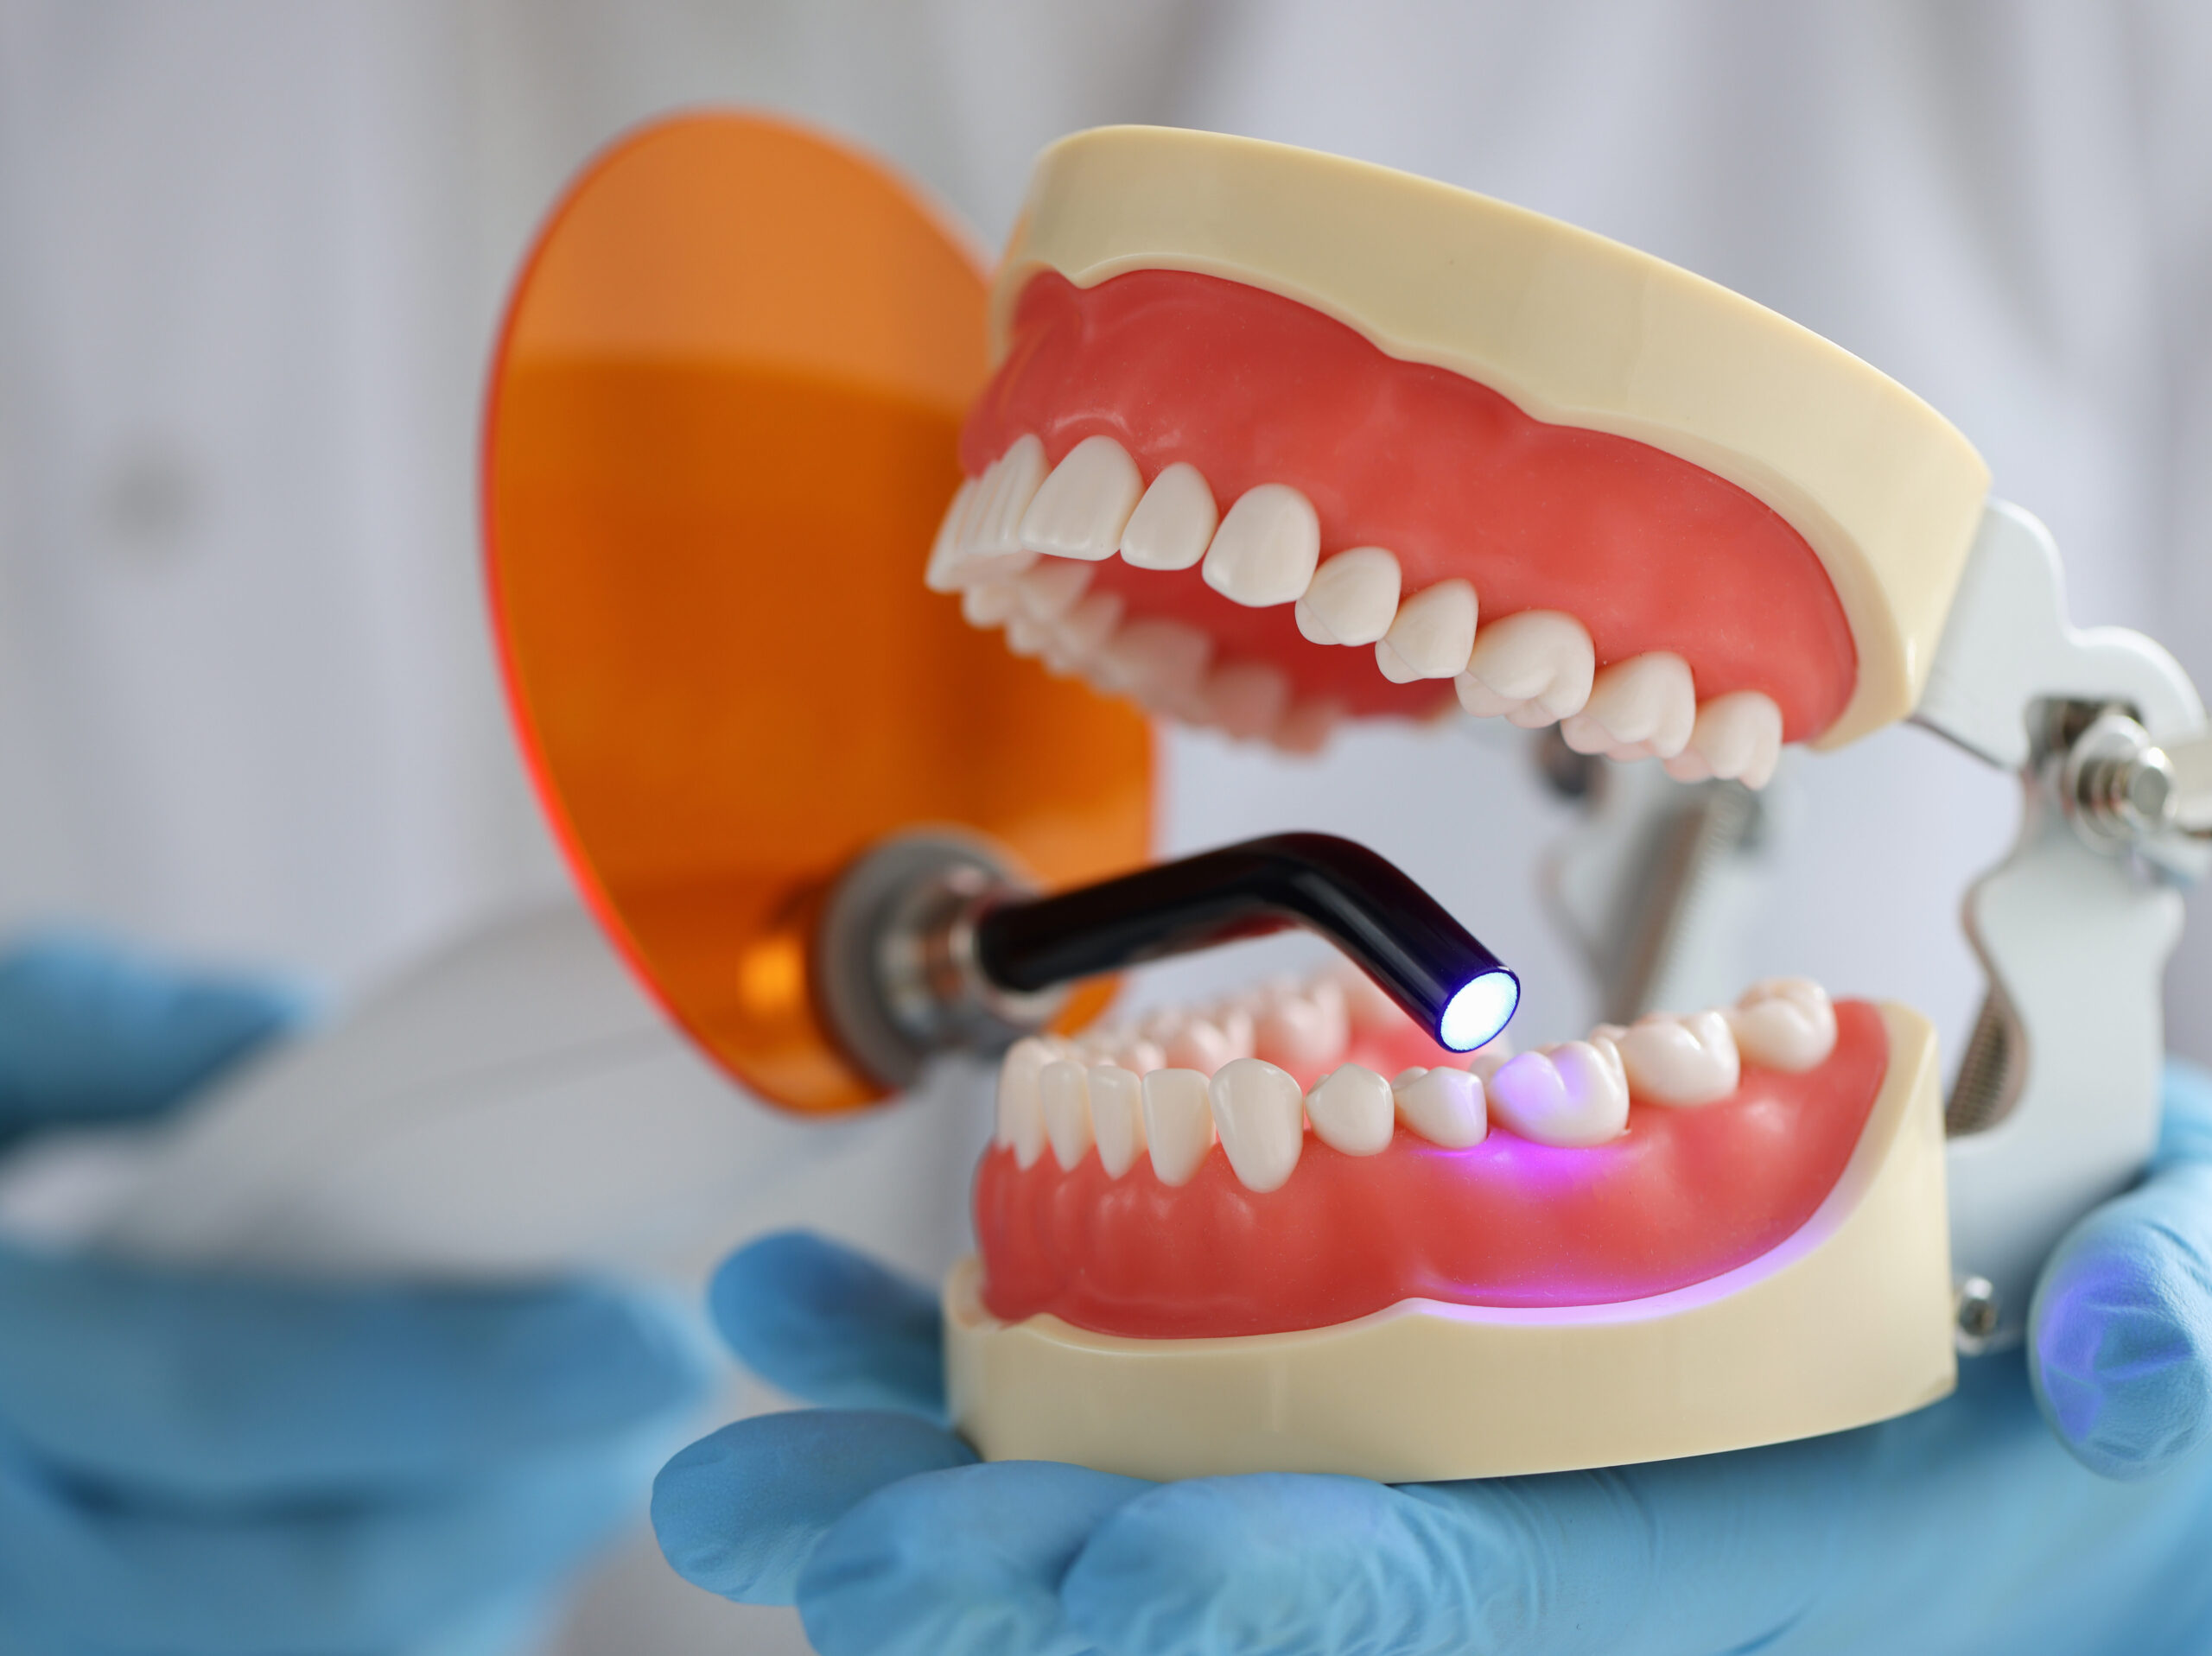 Zahnfüllung wird mit UV-Licht ausgehärtet